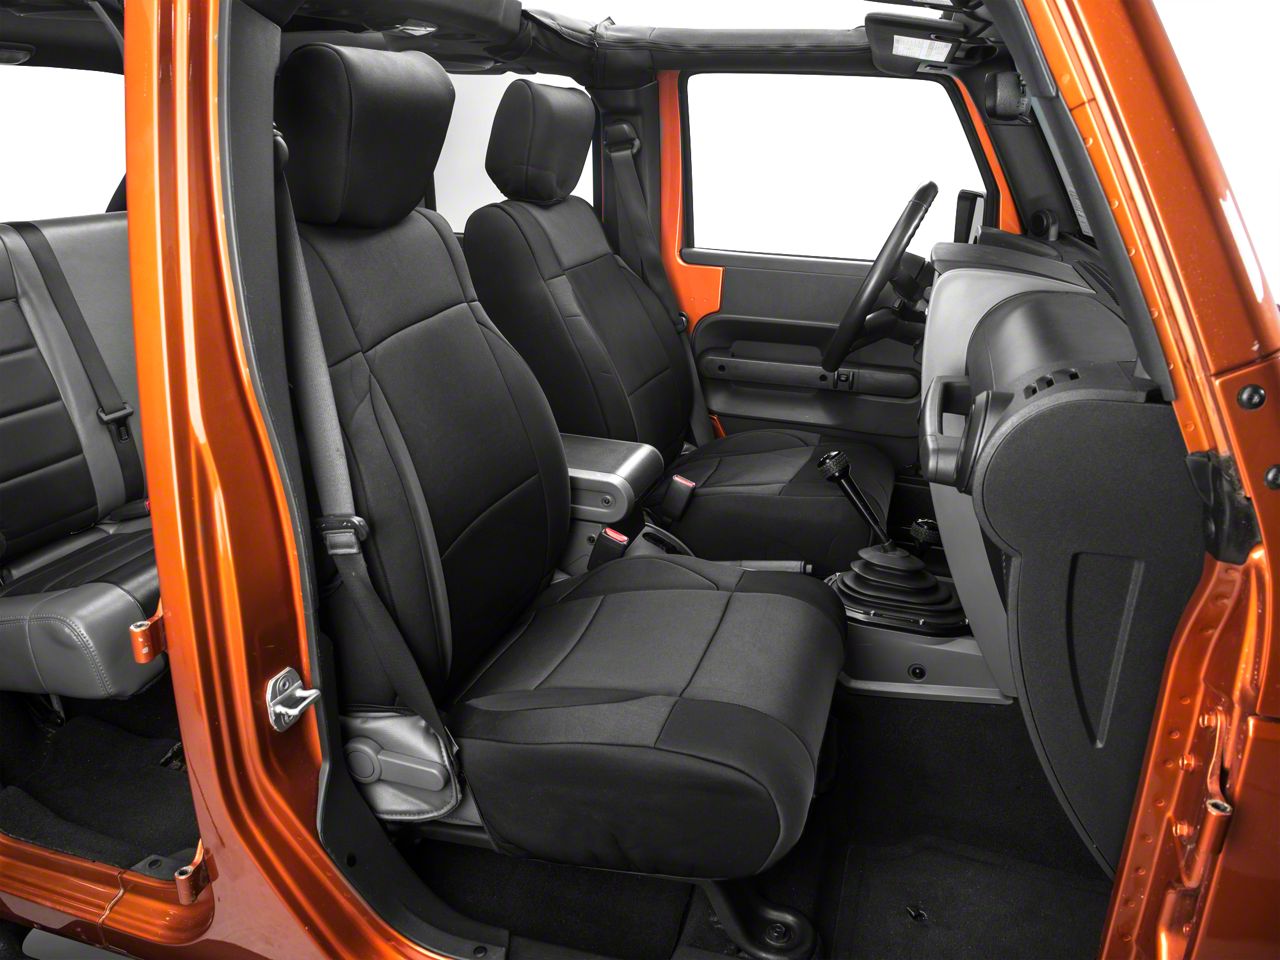 Smittybilt Jeep Wrangler Neoprene Front Rear Seat Covers Black J103852 07 18 Jk - Neoprene Seat Covers For 2018 Jeep Wrangler Unlimited